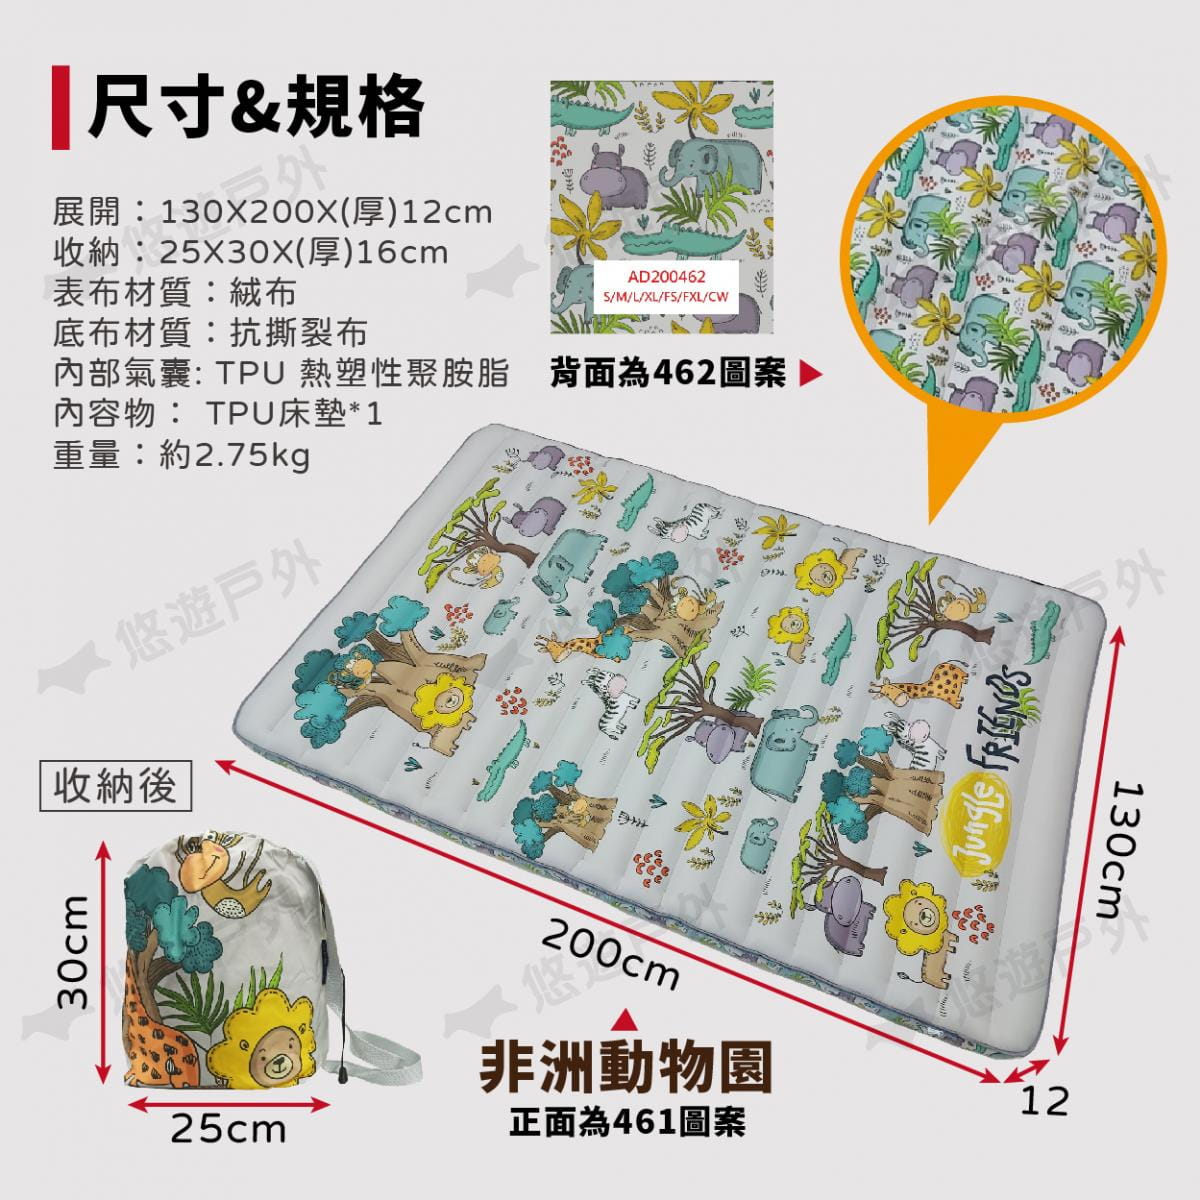 【ATC】TPU雙人組合充氣床墊 多色可選 (悠遊戶外) 8